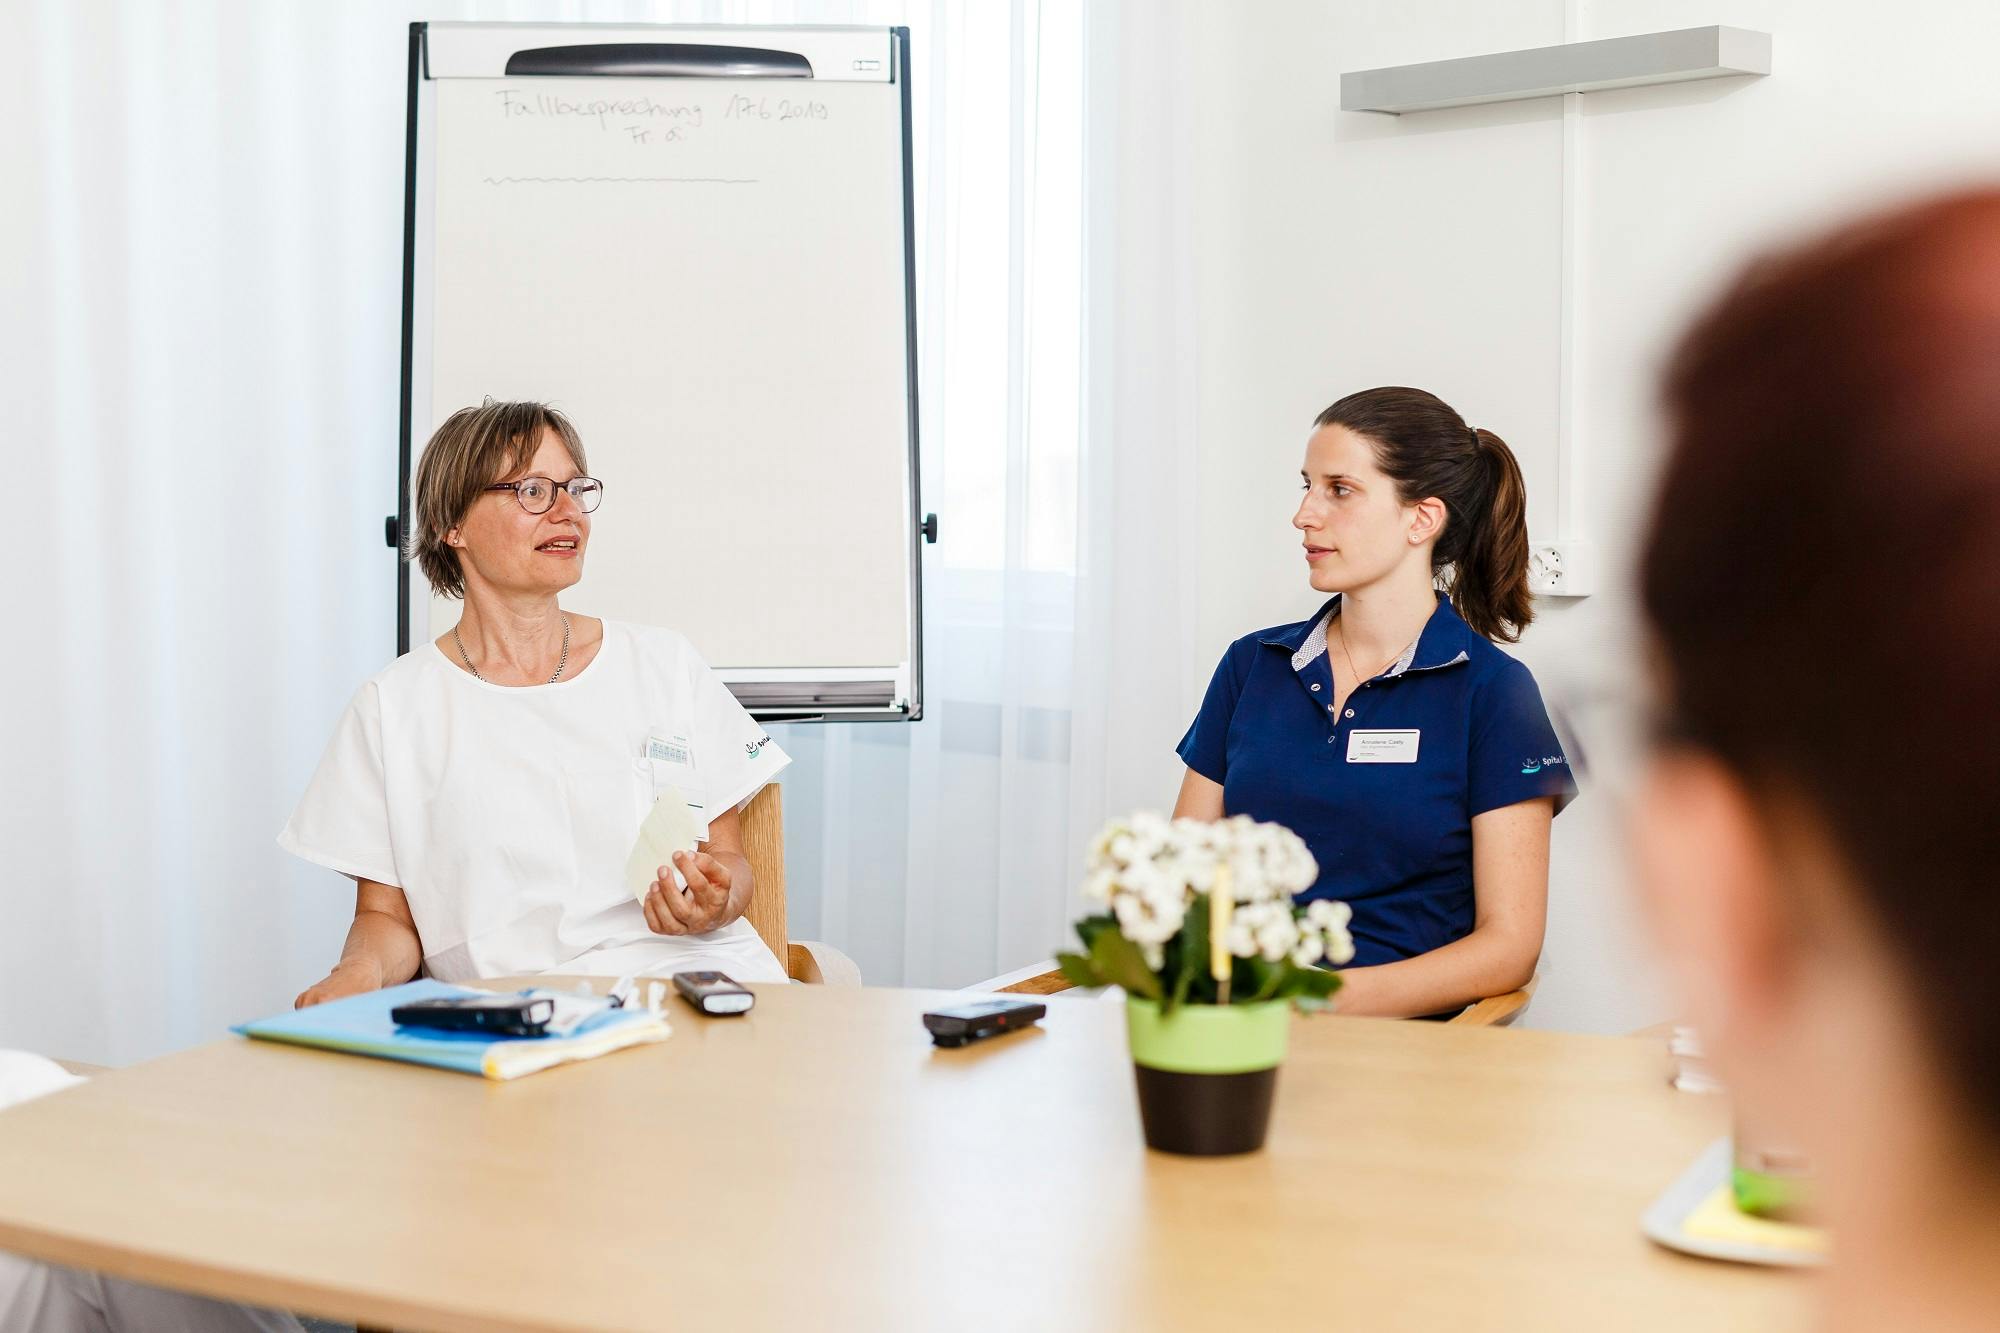 Besprechung im Büro mit zwei weiblichen Mitarbeitern, die sich gegenübersitzen und diskutieren, mit einer weißen Tafel im Hintergrund.